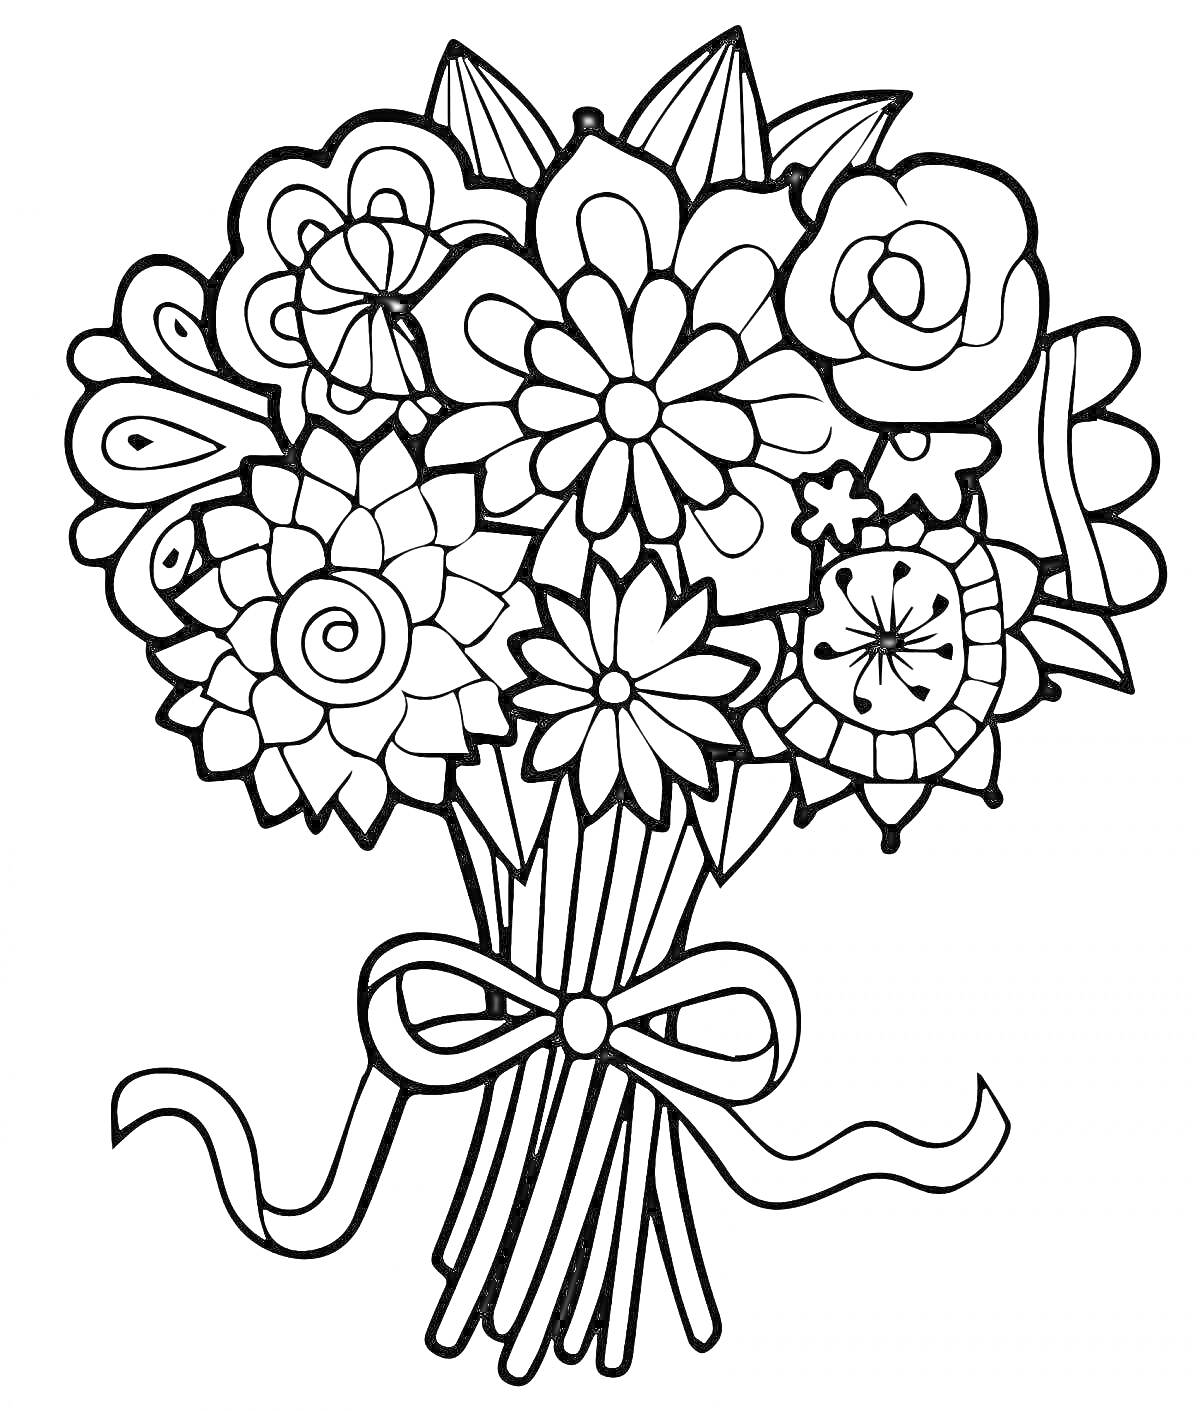 Раскраска Букет цветов с разнообразными элементами, включая розу, ромашки, листья и бабочку, с бантом